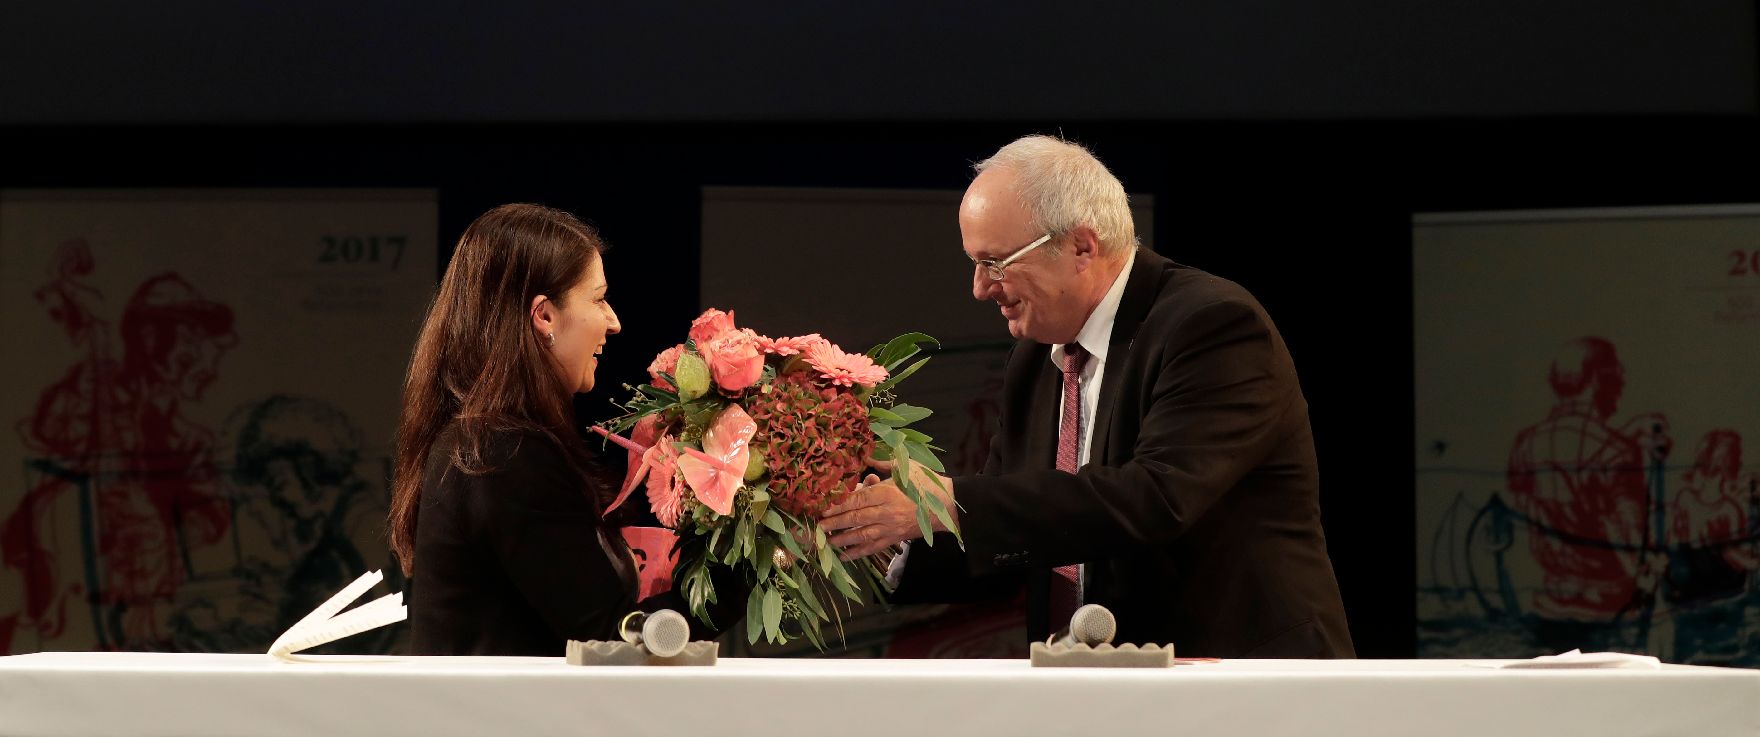 Am 3. November 2016 nahm Staatssekretärin Muna Duzdar (l.) am Reformationsempfang im Odeon Theater Wien teil. Im Bild mit Michael Bünker, Bischof der evangelischen Kirche A.B. in Österreich (r.).